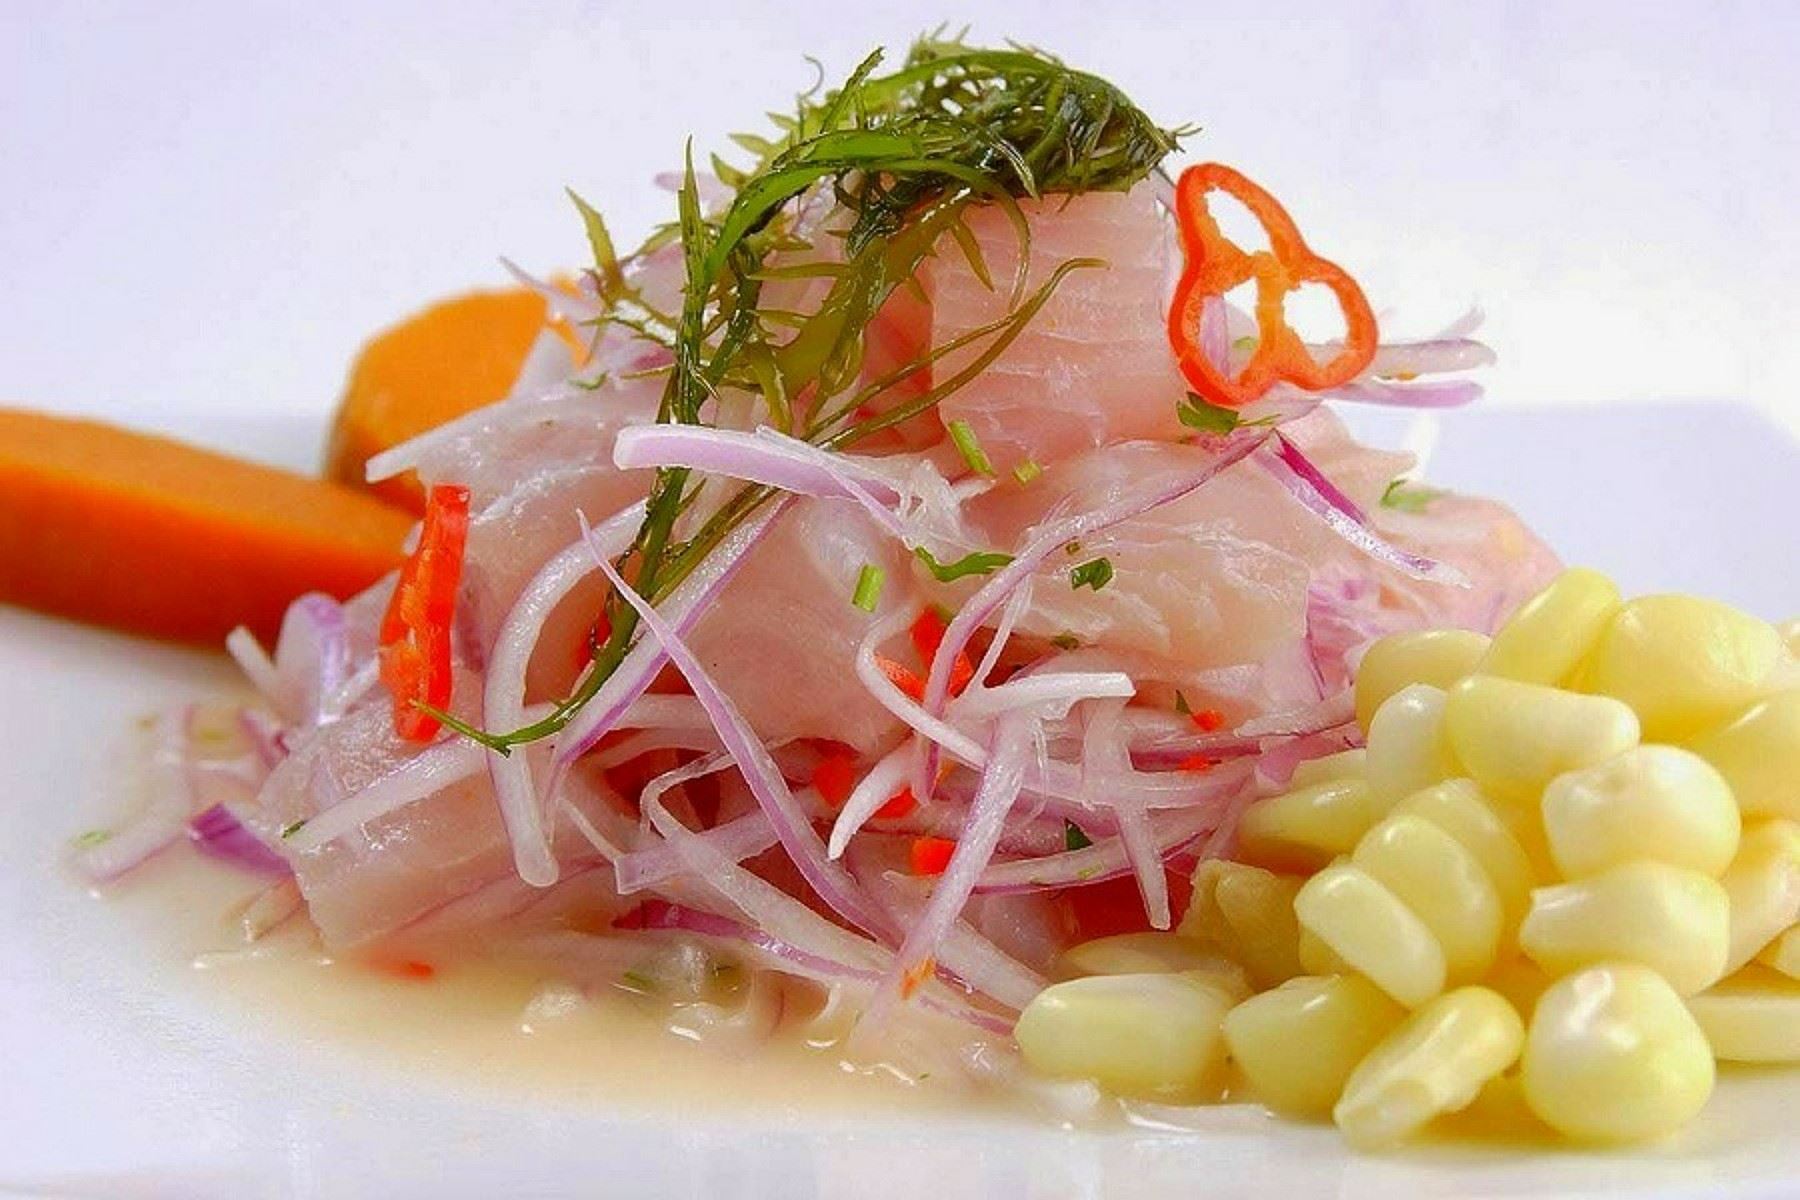 El cebiche es un plato típico de la cocina peruana; sus ingredientes principales son el pescado crudo en trozos, jugo de limón, cebolla cruda cortada muy delgada y ají. Foto: ANDINA/archivo